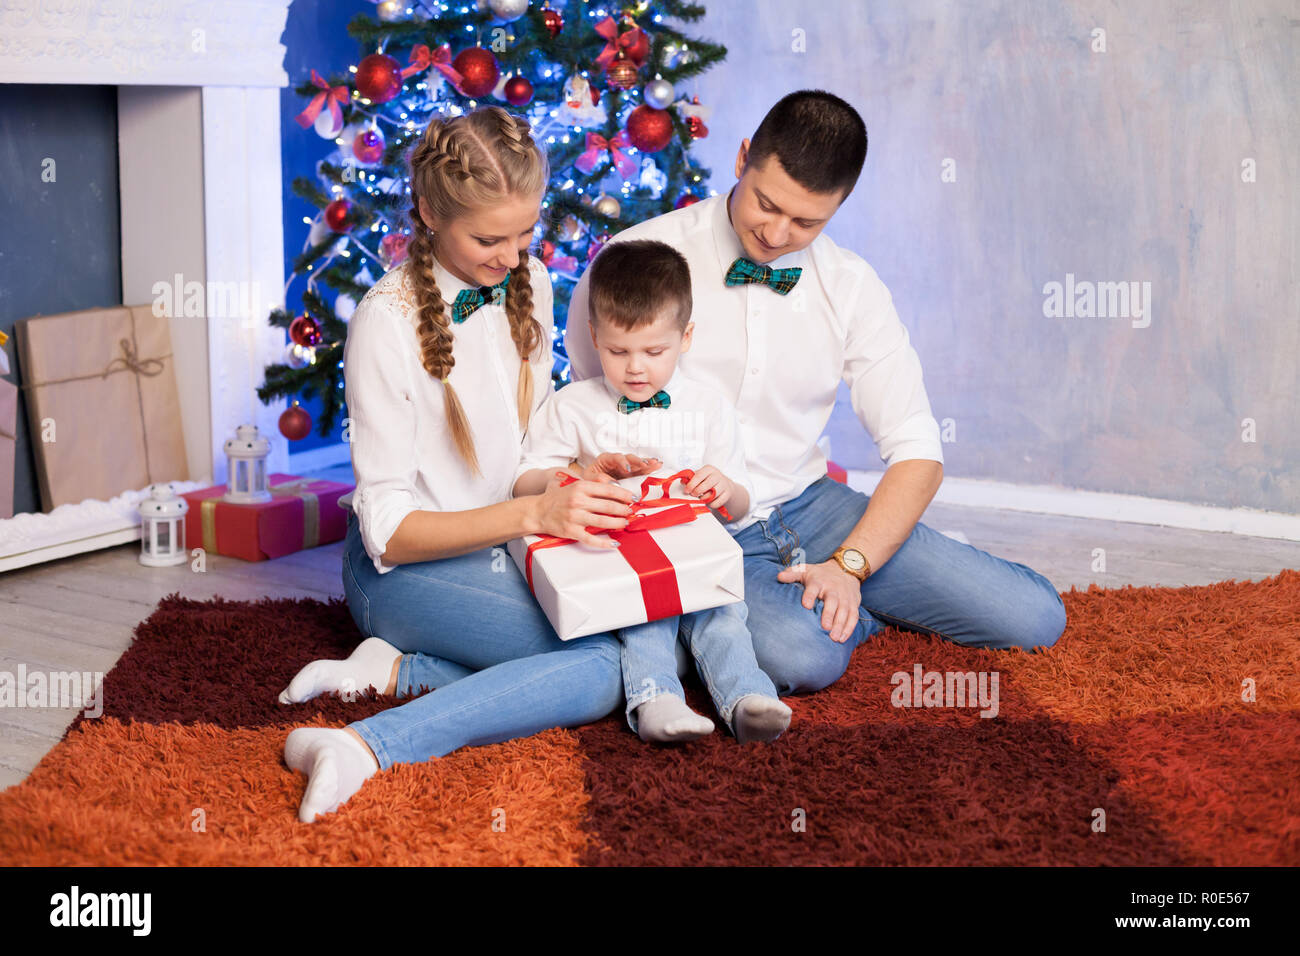 Regali Di Natale Mamma E Papa.Mamma E Papa Di Un Ragazzino Aprire I Regali Di Natale Per Il Nuovo Anno Foto Stock Alamy